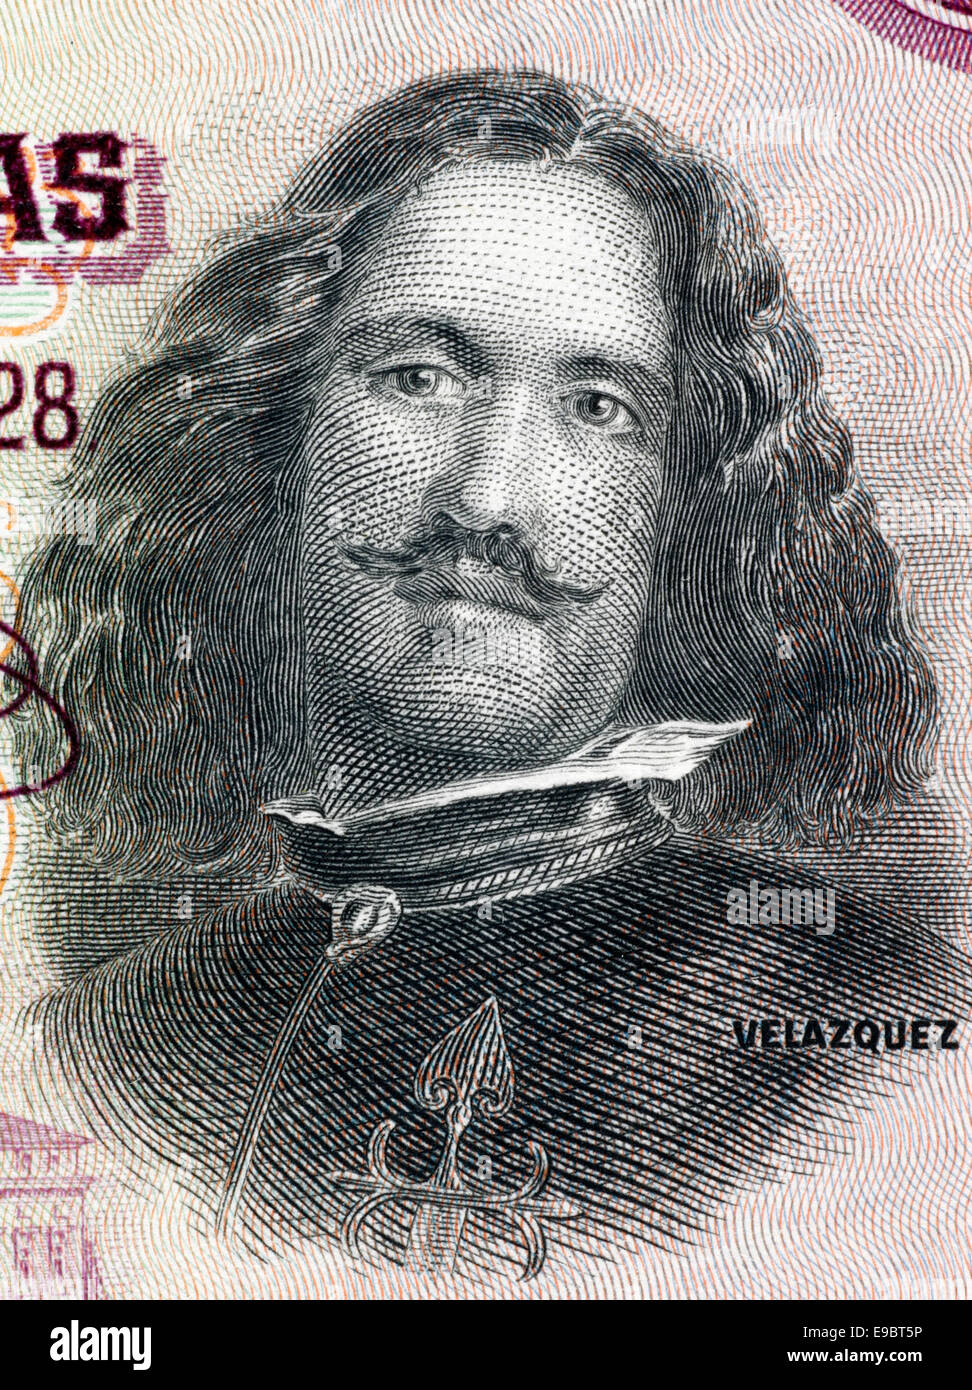 Diego Velazquez (1599-1660) auf 50 Peseten 1928 Banknote aus Spanien. Spanischer Maler. Stockfoto